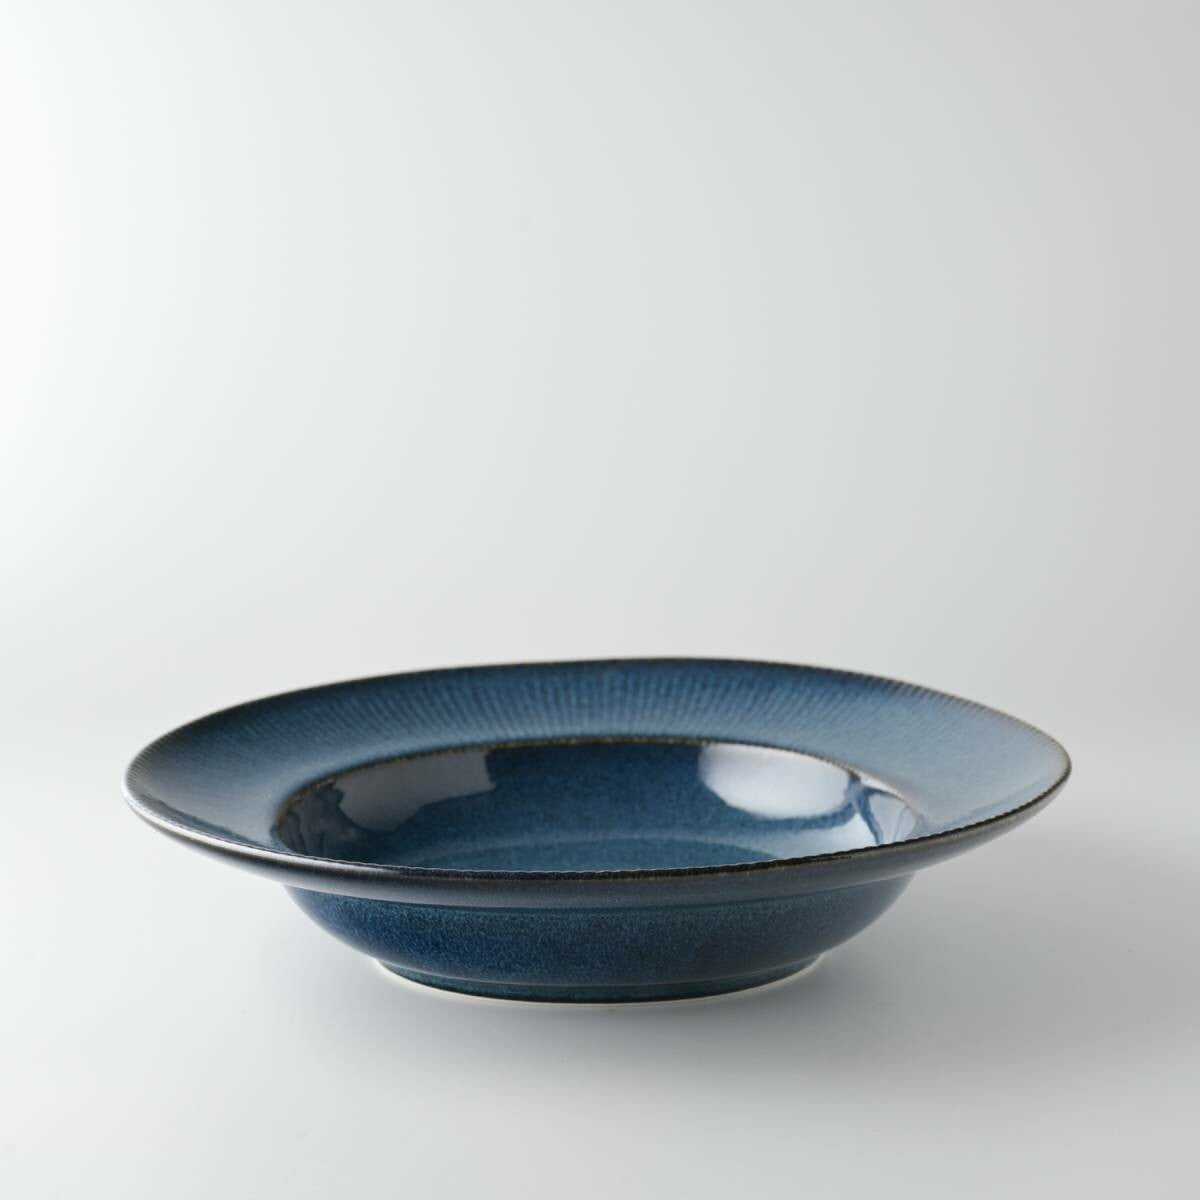 Miyama "cadre" coupe plate, indigo blue glaze